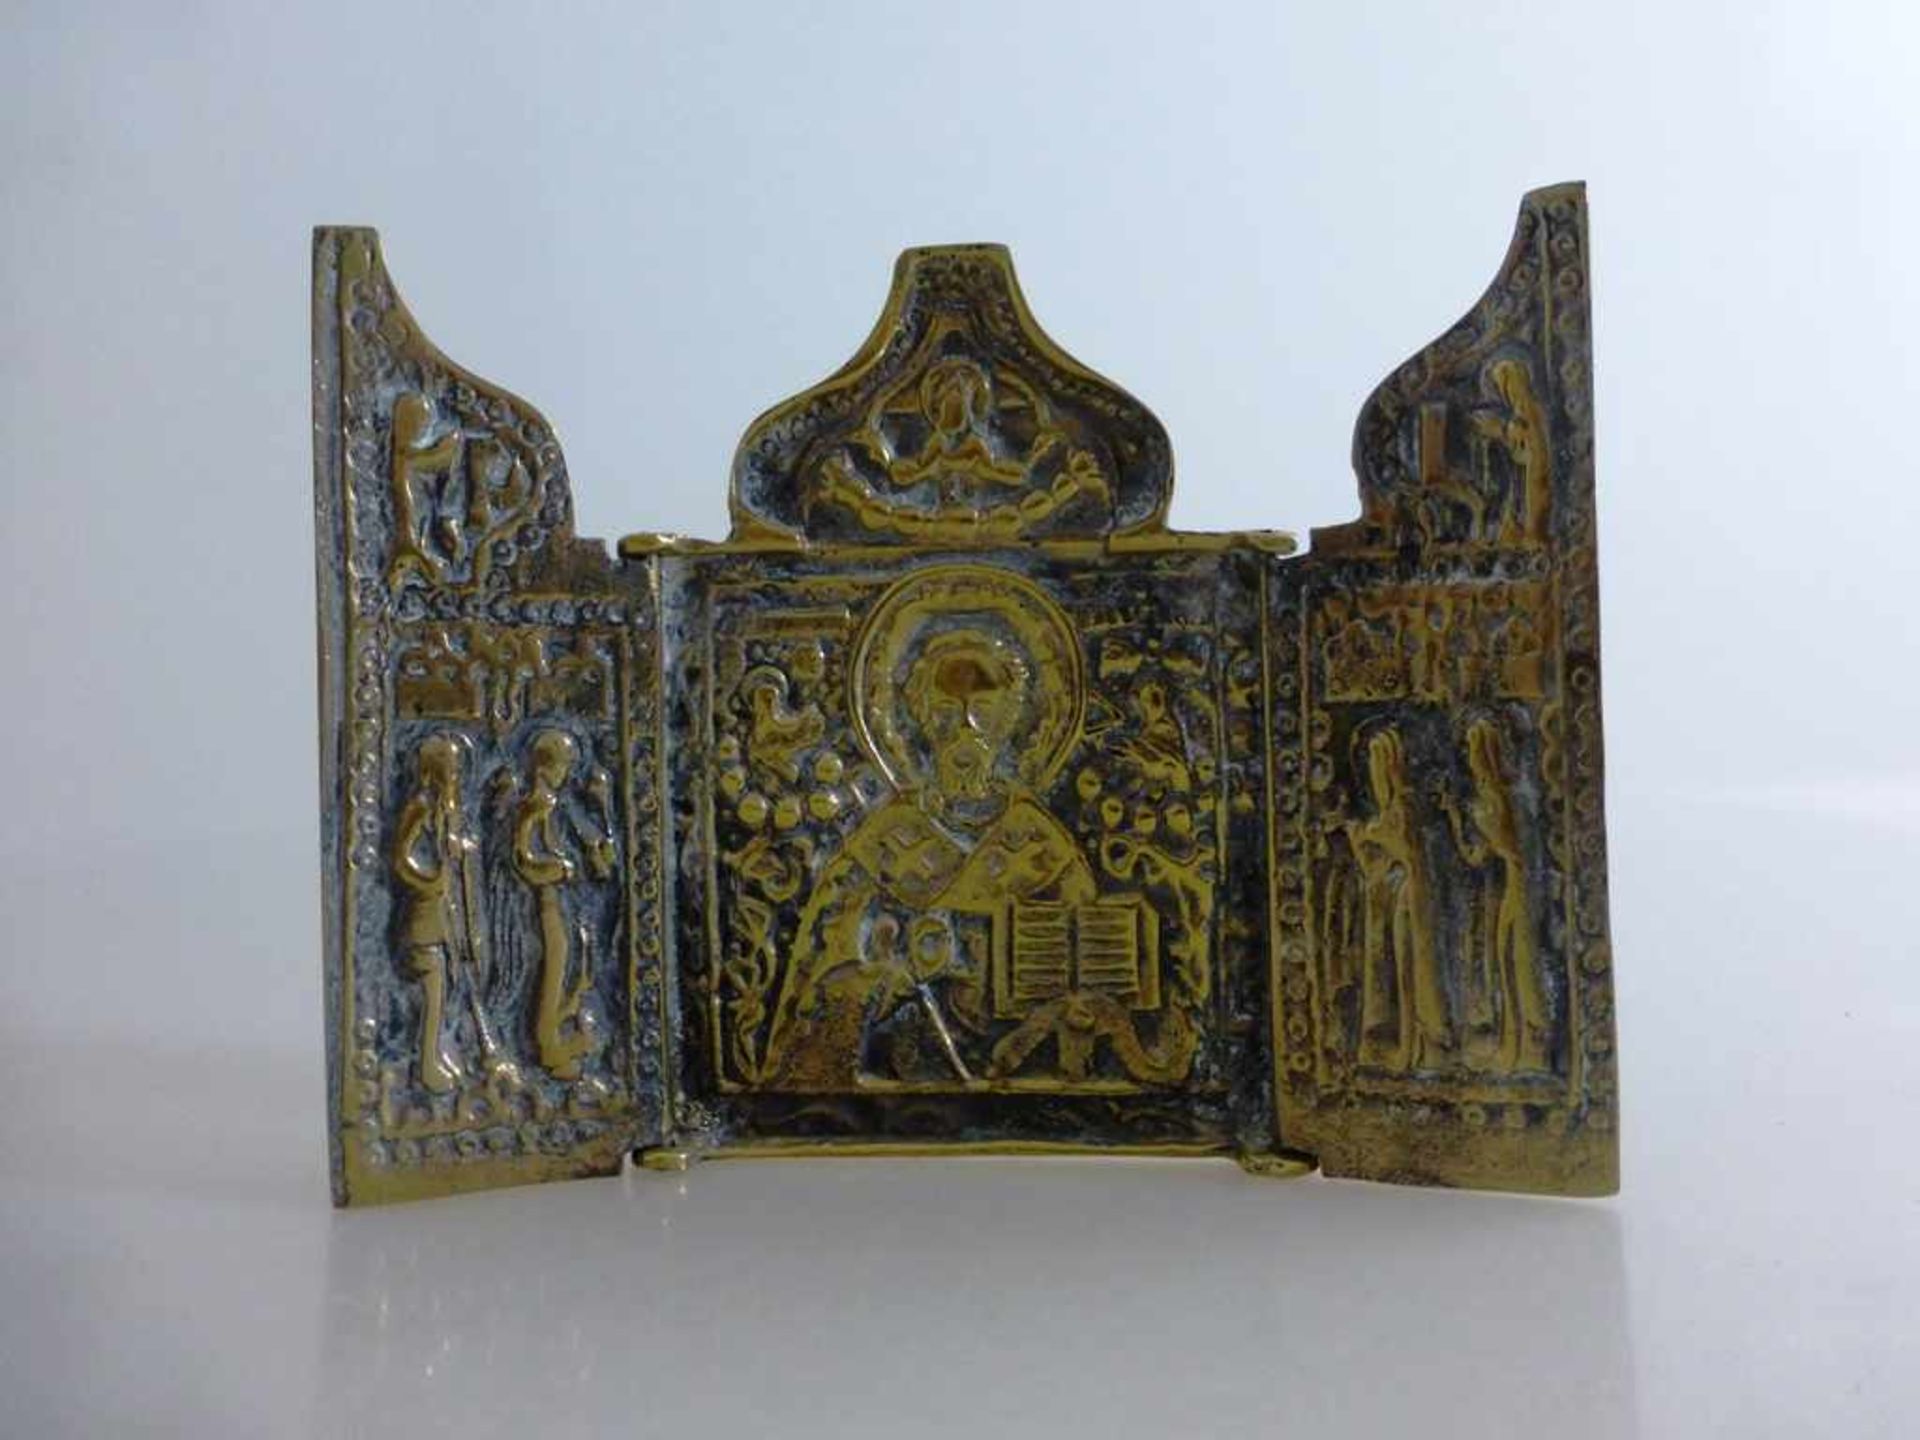 Reiseikone, Bronze, Russland, 18./19.Jh., 3-flügliges Triptychon, bestehend aus drei Altarflügeln